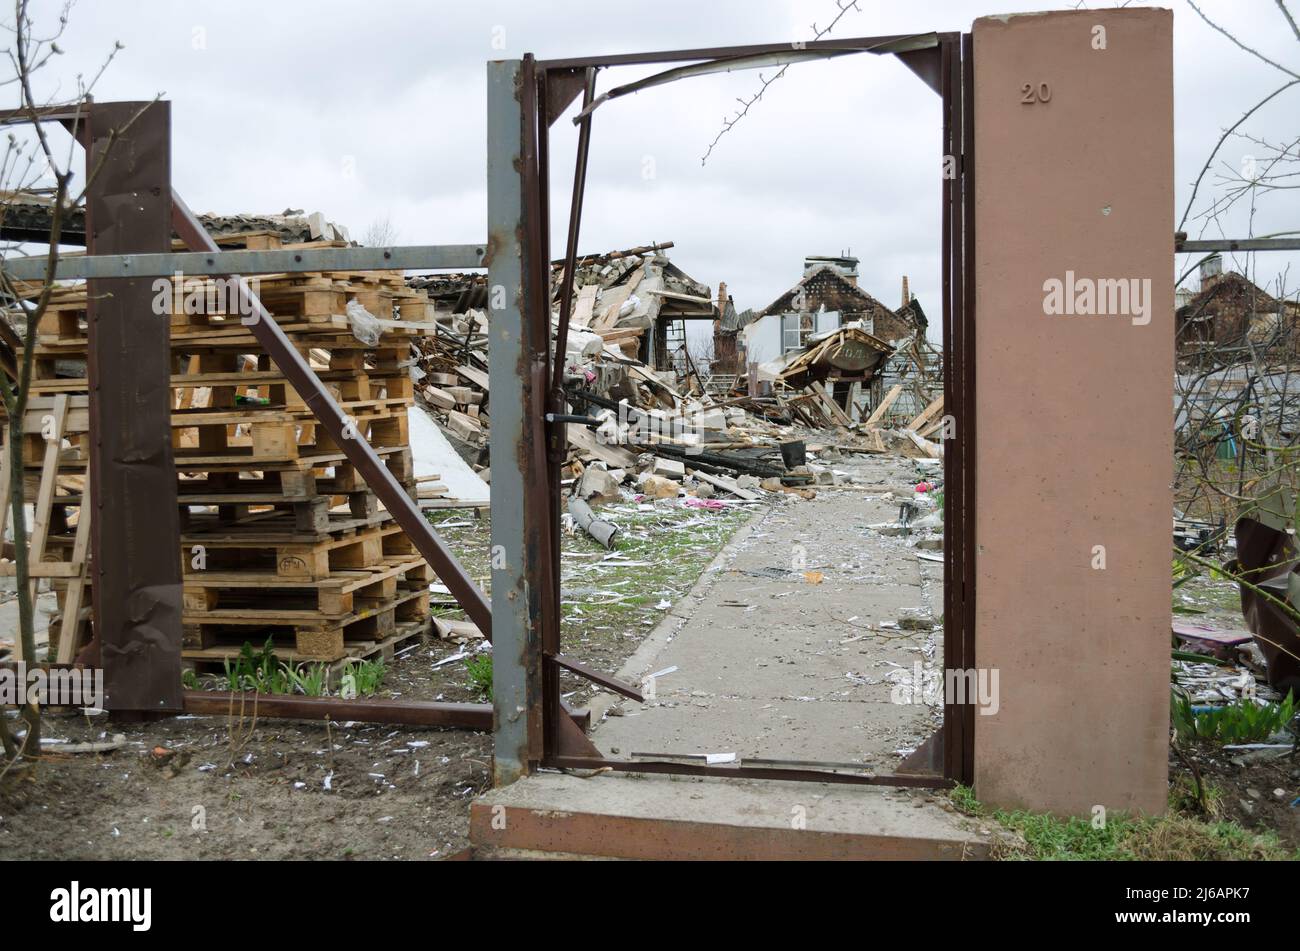 Village de Dmytrivka, région de Kyev, Ukraine - 13 avril 2022 : maison privée détruite pendant des hostilités actives en Ukraine. Guerre de la Russie contre l'Ukraine Banque D'Images